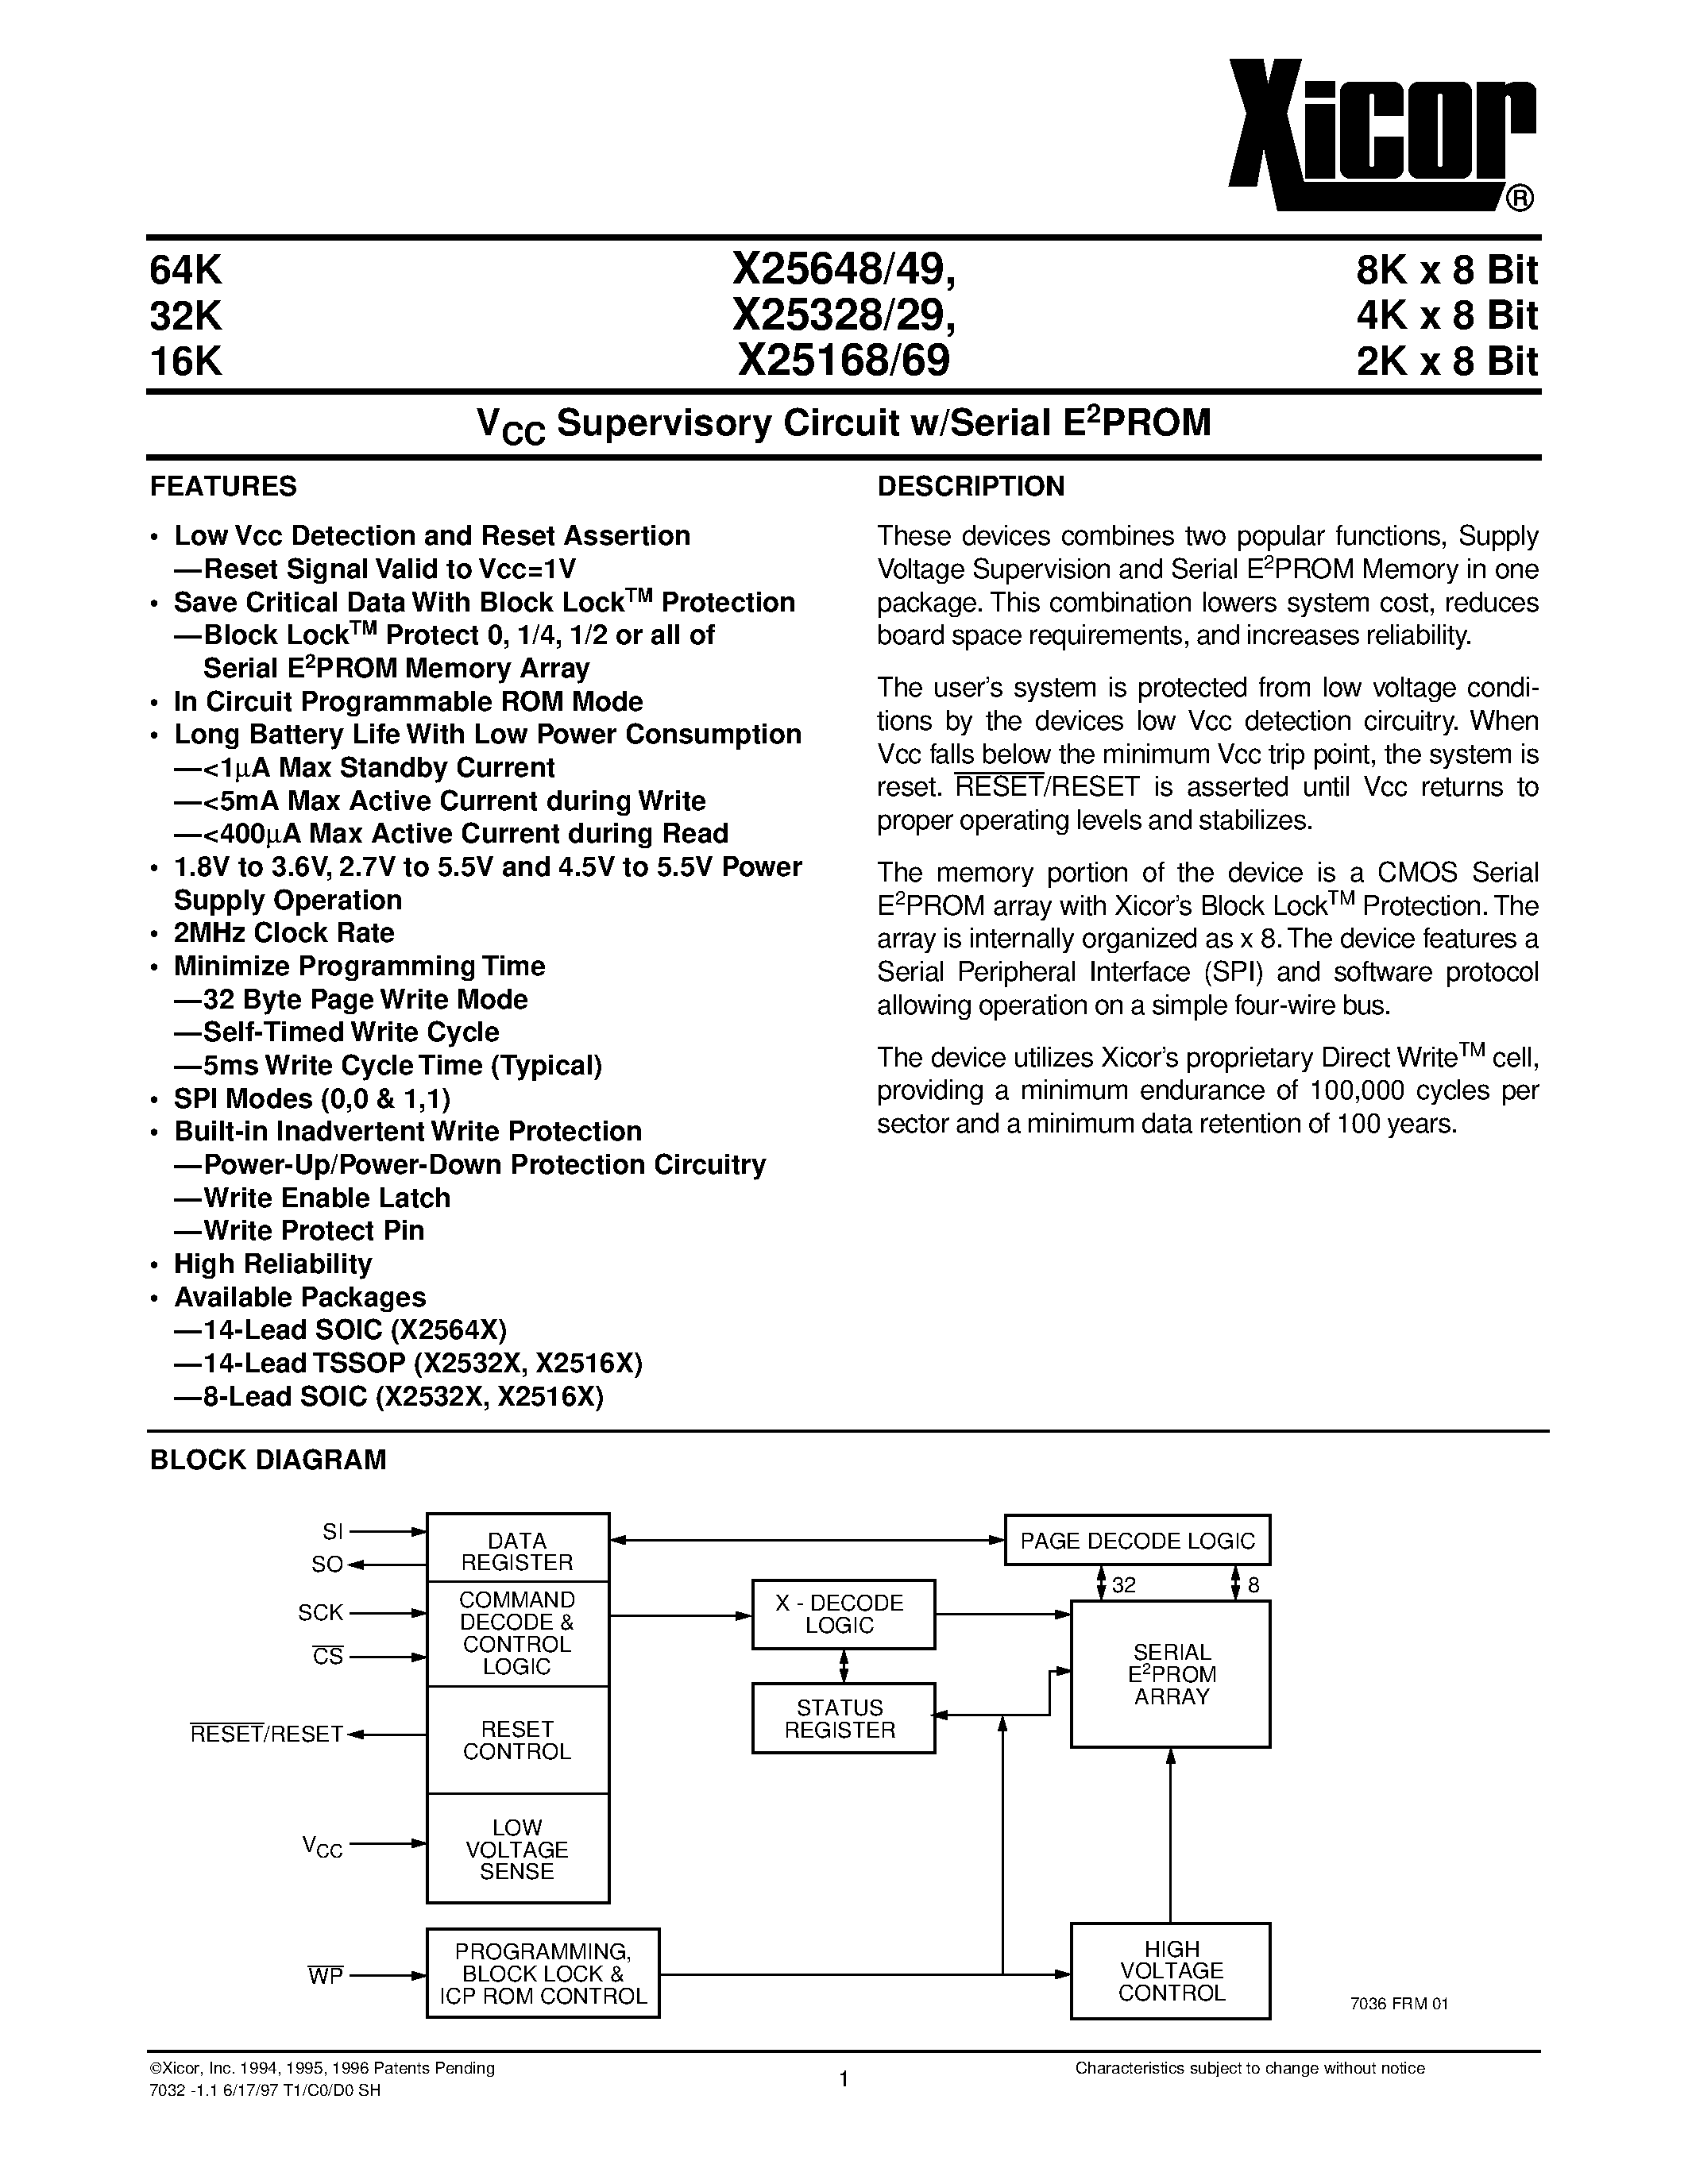 Даташит X25649S8 - V CC Supervisory Circuit w/Serial E 2 PROM страница 1